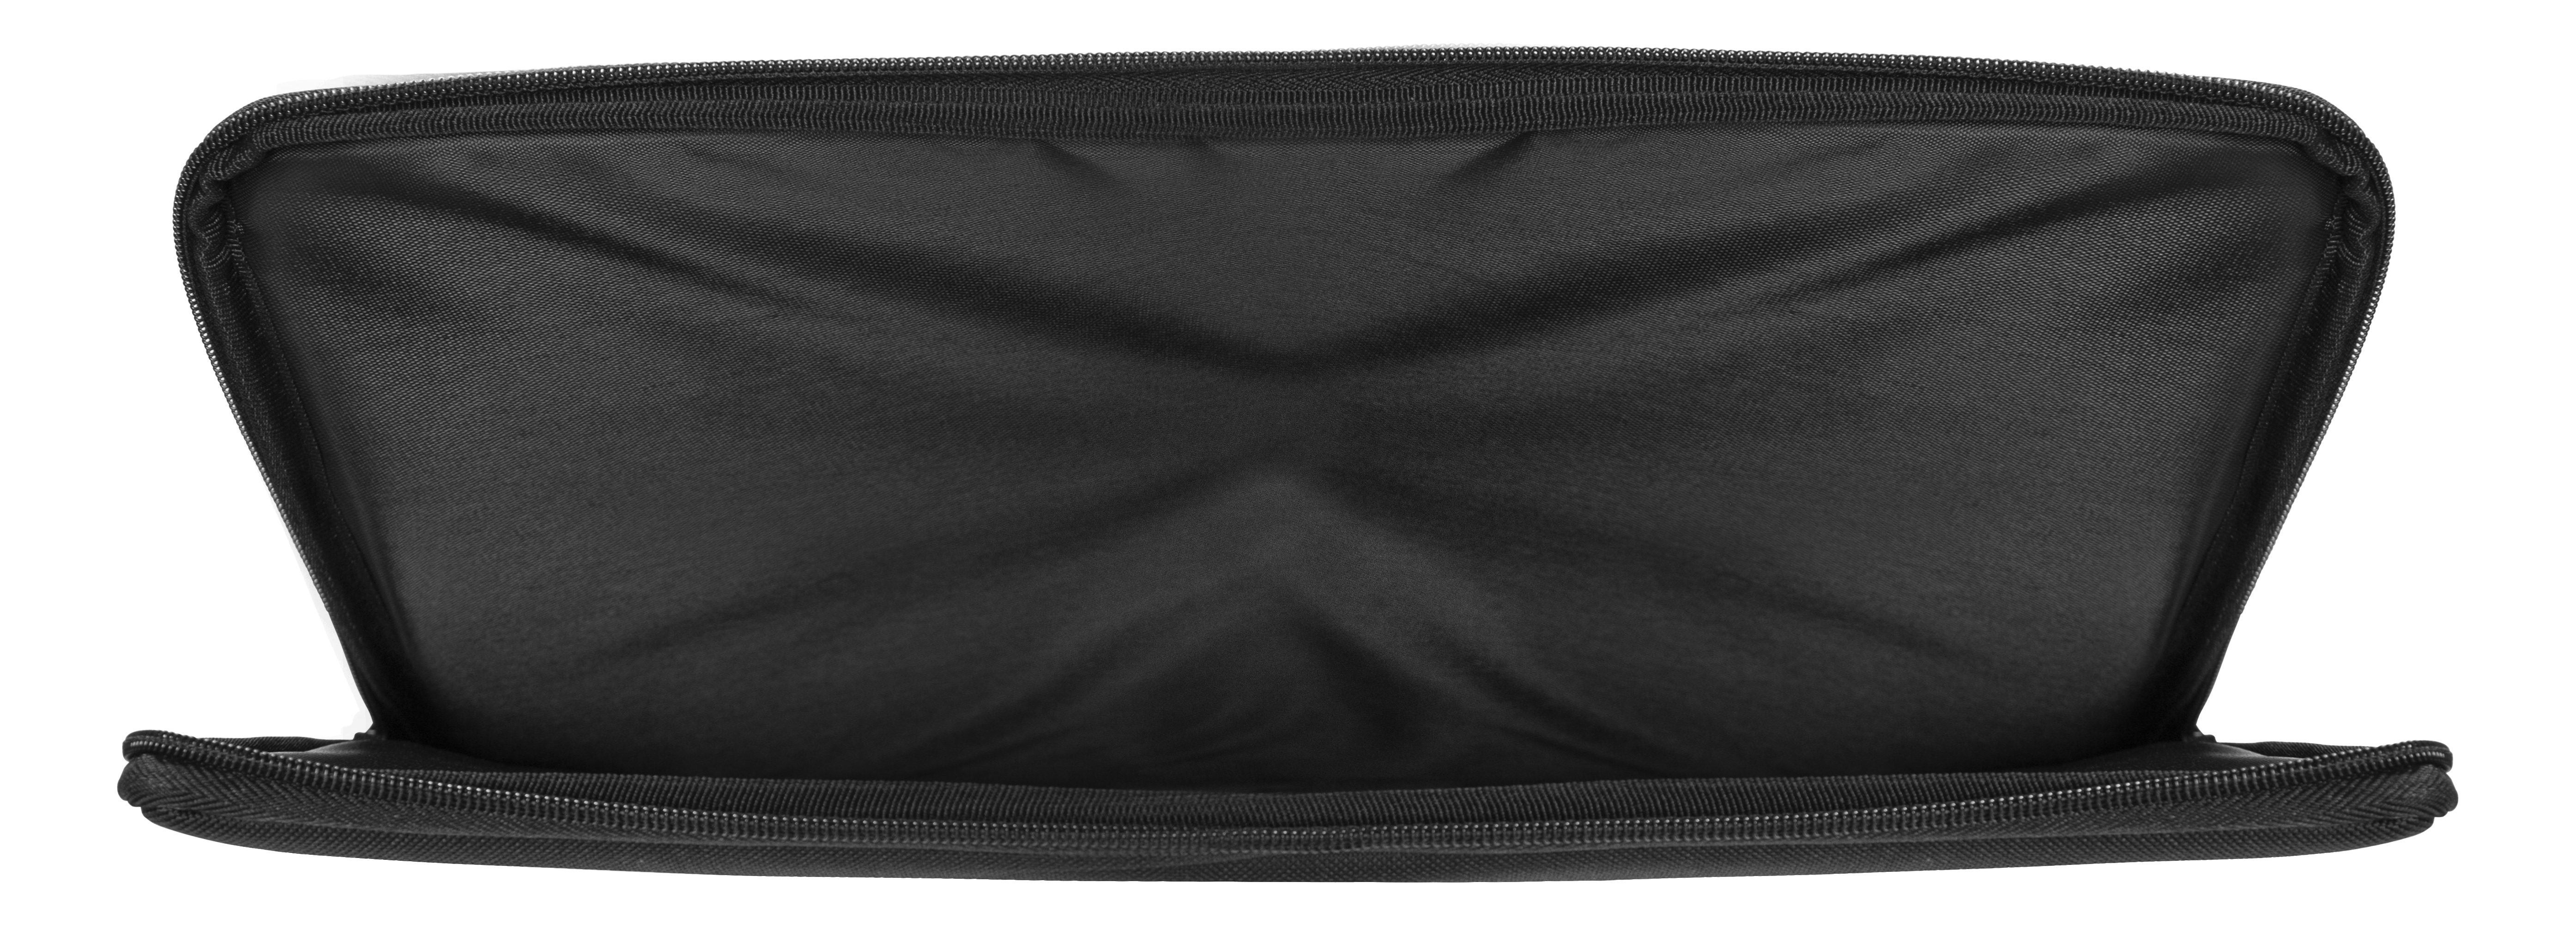 DELTACO NV-904 Universal Materialien, Notebooktasche Schwarz Verschiedene Sleeve für